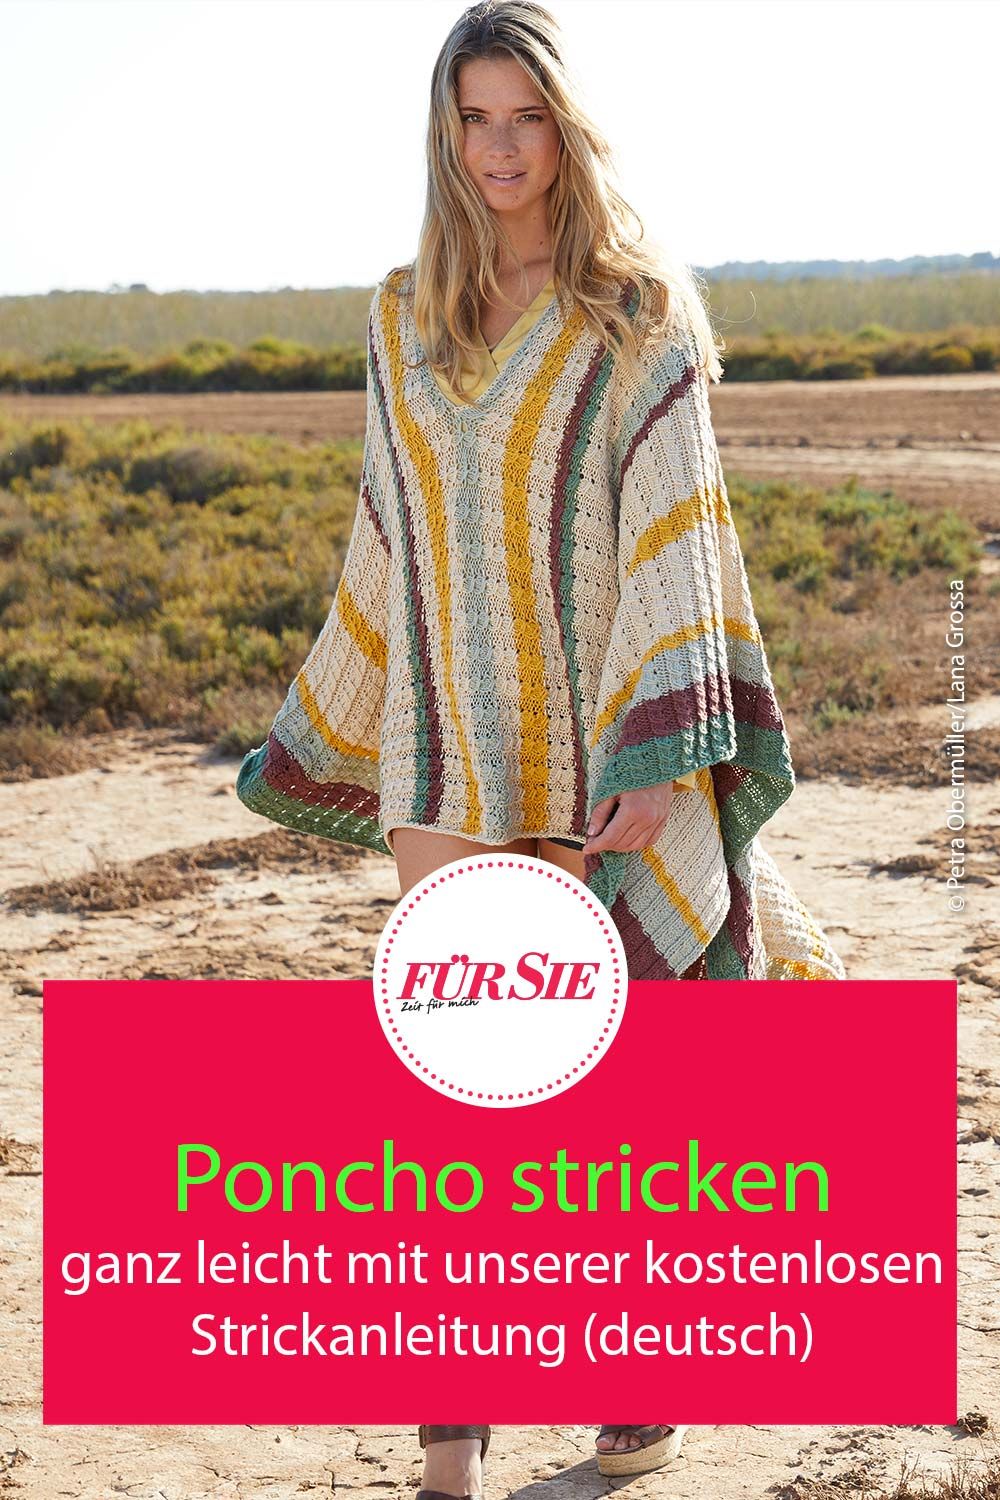 Poncho-stricken-mit-unserer-kostenlosen-Strickanleitung-deutsch.jpg